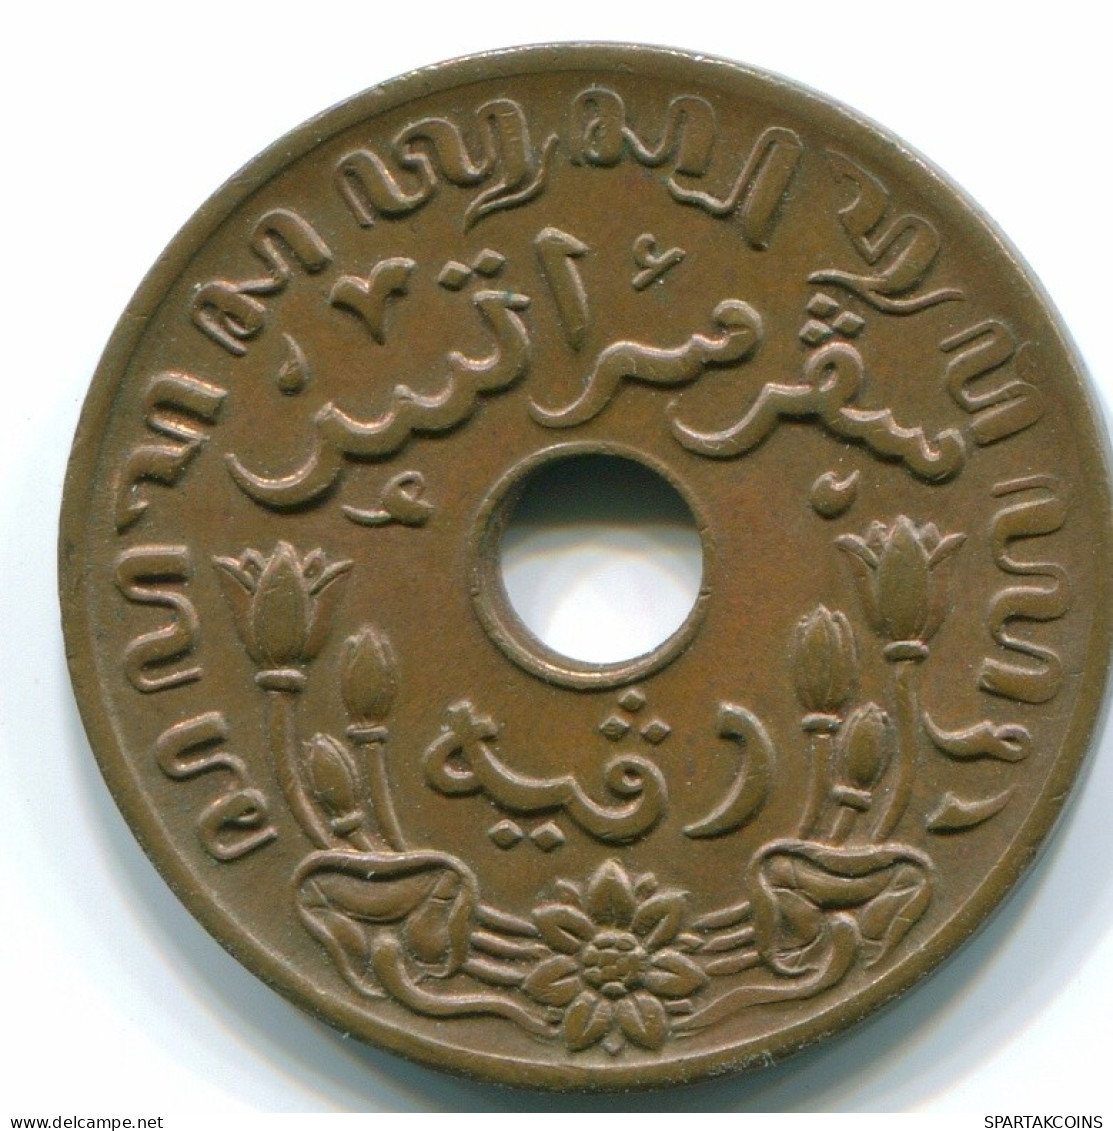 1 CENT 1945 P INDES ORIENTALES NÉERLANDAISES INDONÉSIE INDONESIA Bronze Colonial Pièce #S10444.F.A - Indes Néerlandaises